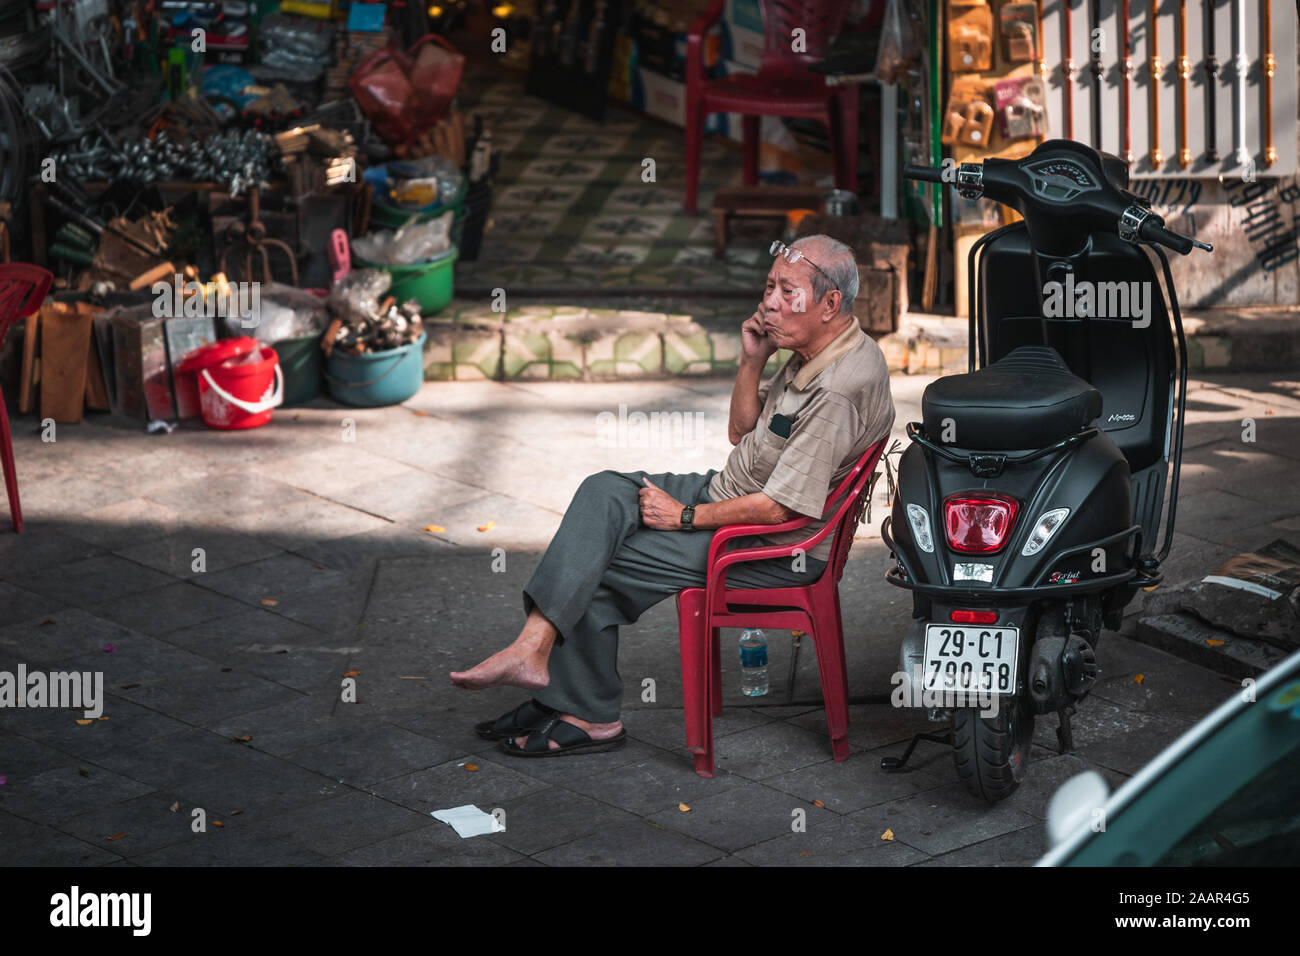 Hanoi, Vietnam - 12 octobre 2019 : Un vieux homme asiatique âgé est assis sur une chaise en plastique à côté d'un cyclomoteur sur le téléphone Banque D'Images